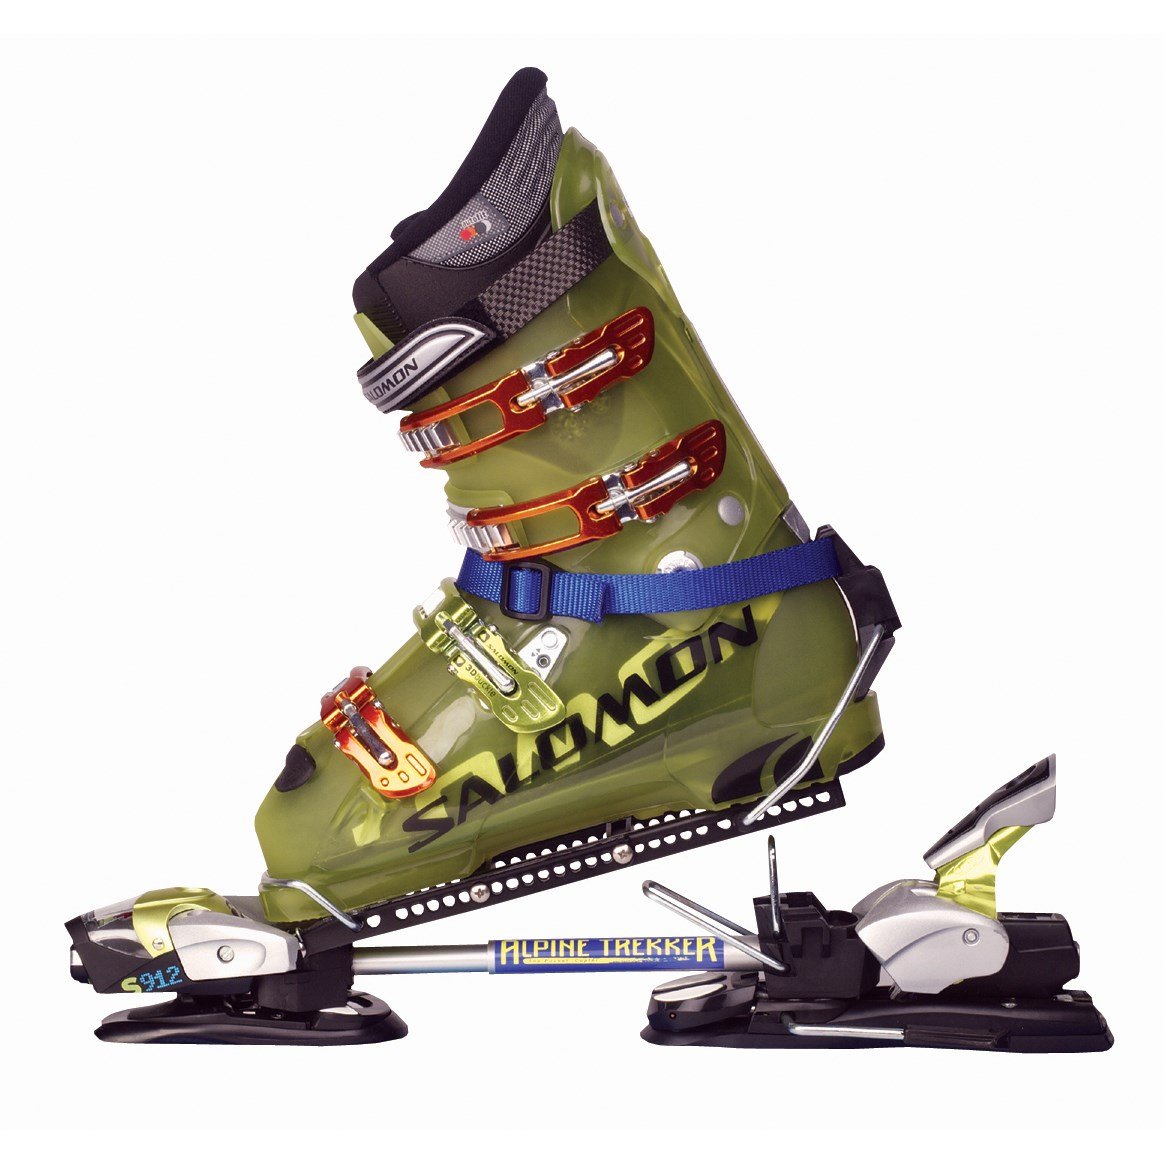 Крепление ботинок к лыжам